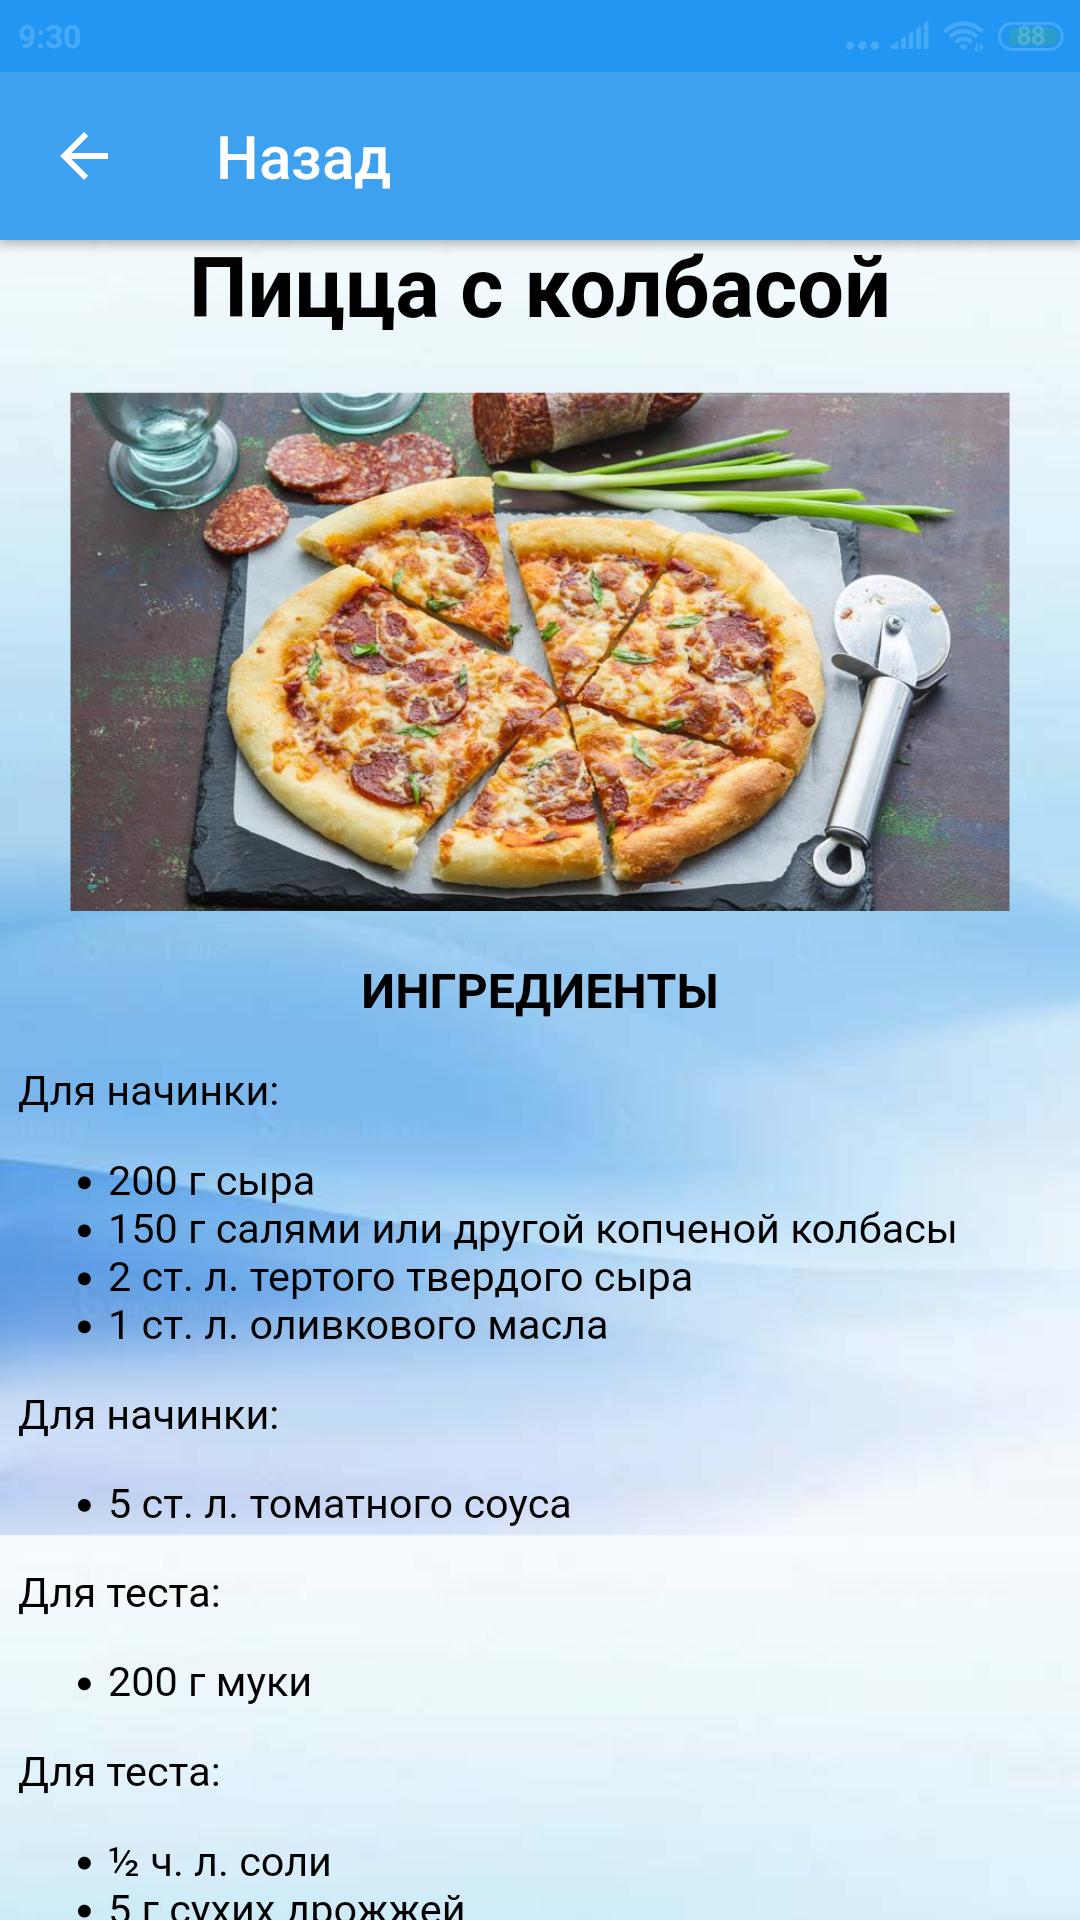 читать онлайн рецепты пиццы фото 77